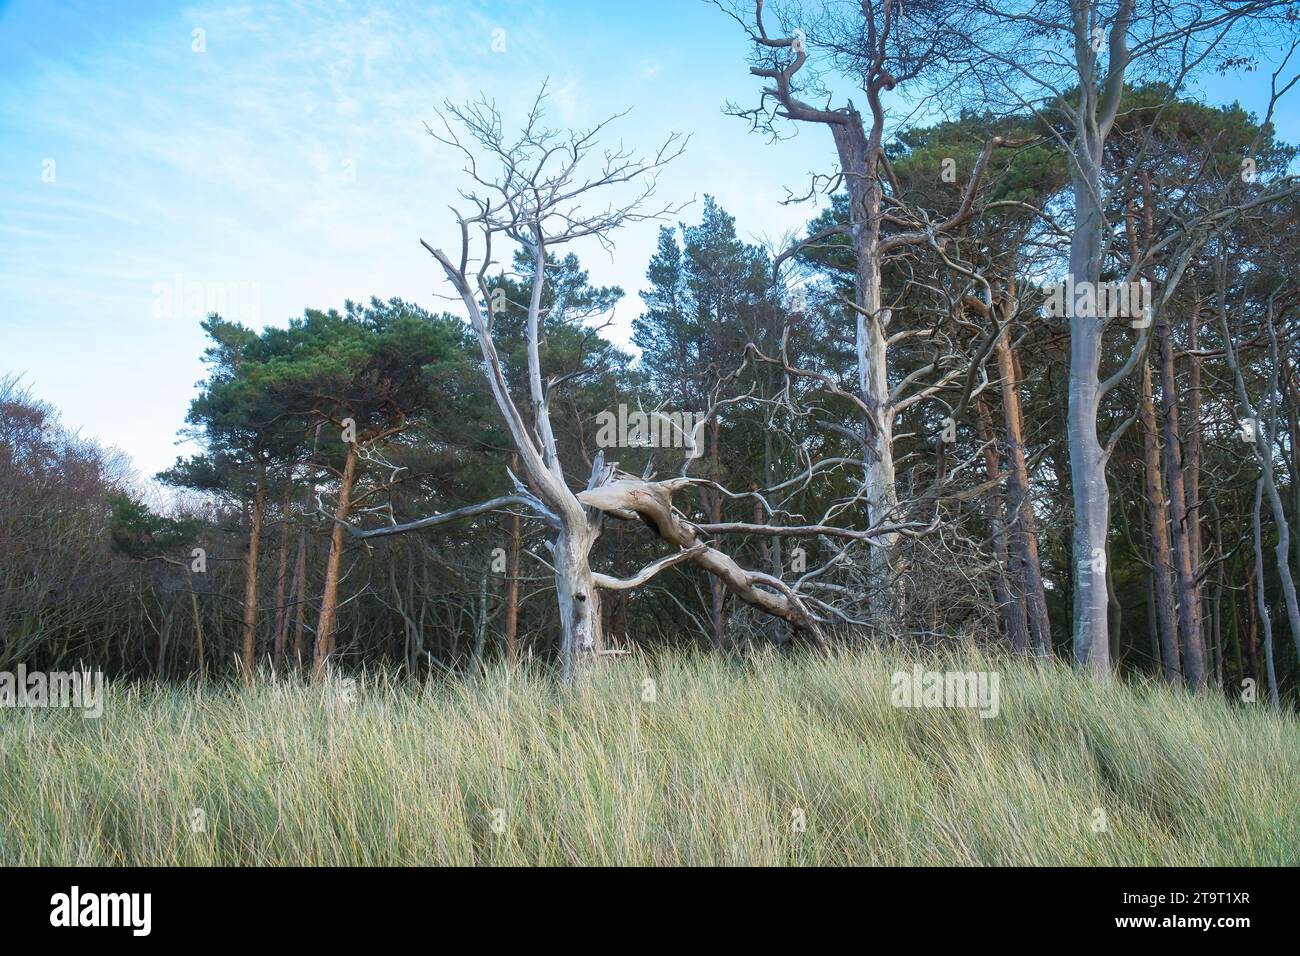 Forêt sur la côte de la mer Baltique. Herbe de dune au premier plan. Transition de plage à la mer. Photographie de nature d'une réserve naturelle Banque D'Images